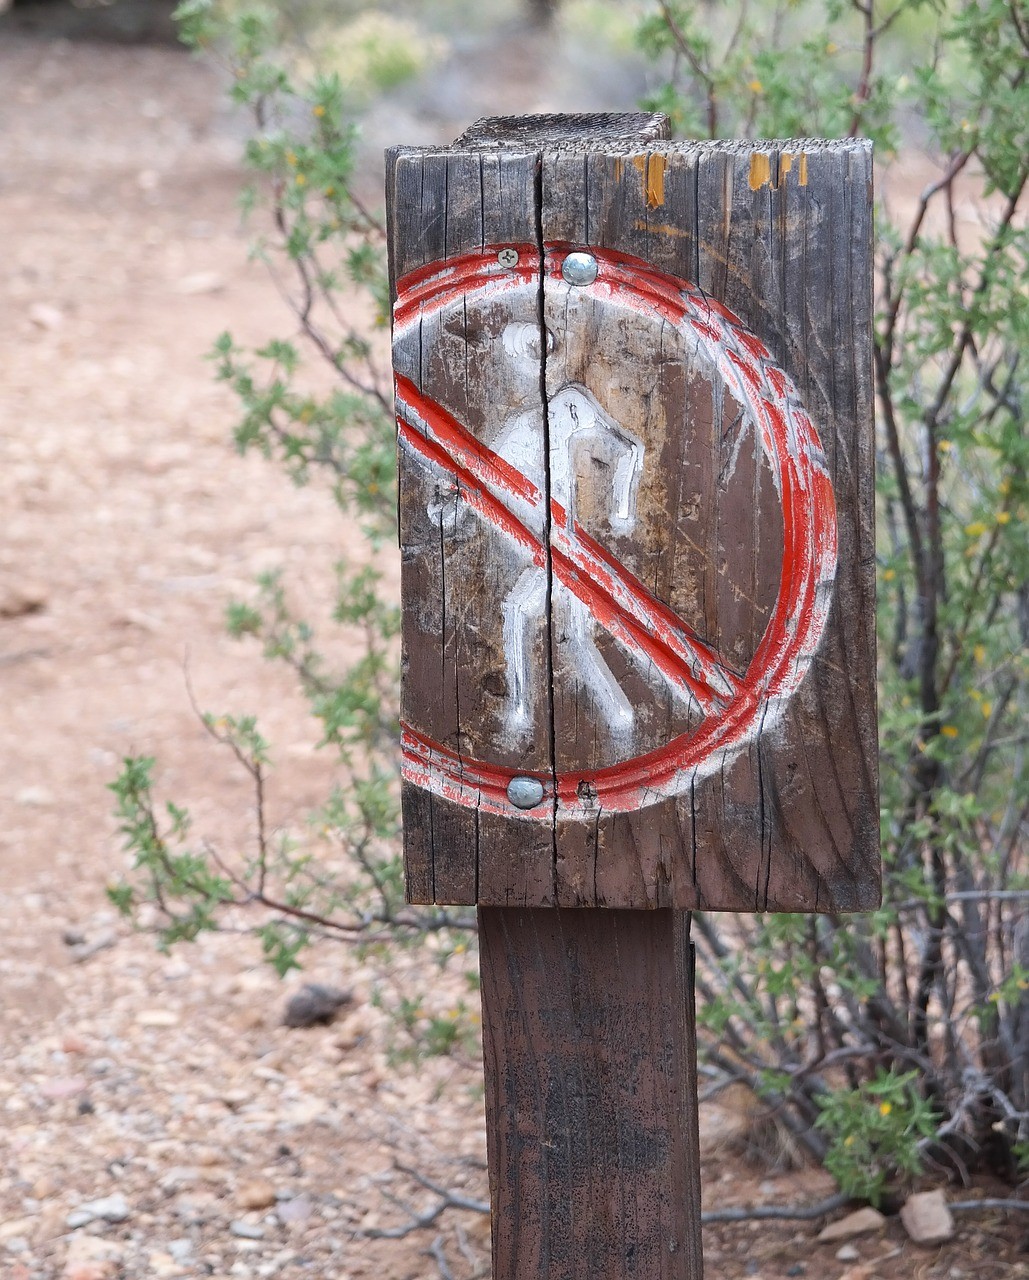 Részleges erdőlátogatási tilalom a Gemenci erdőben